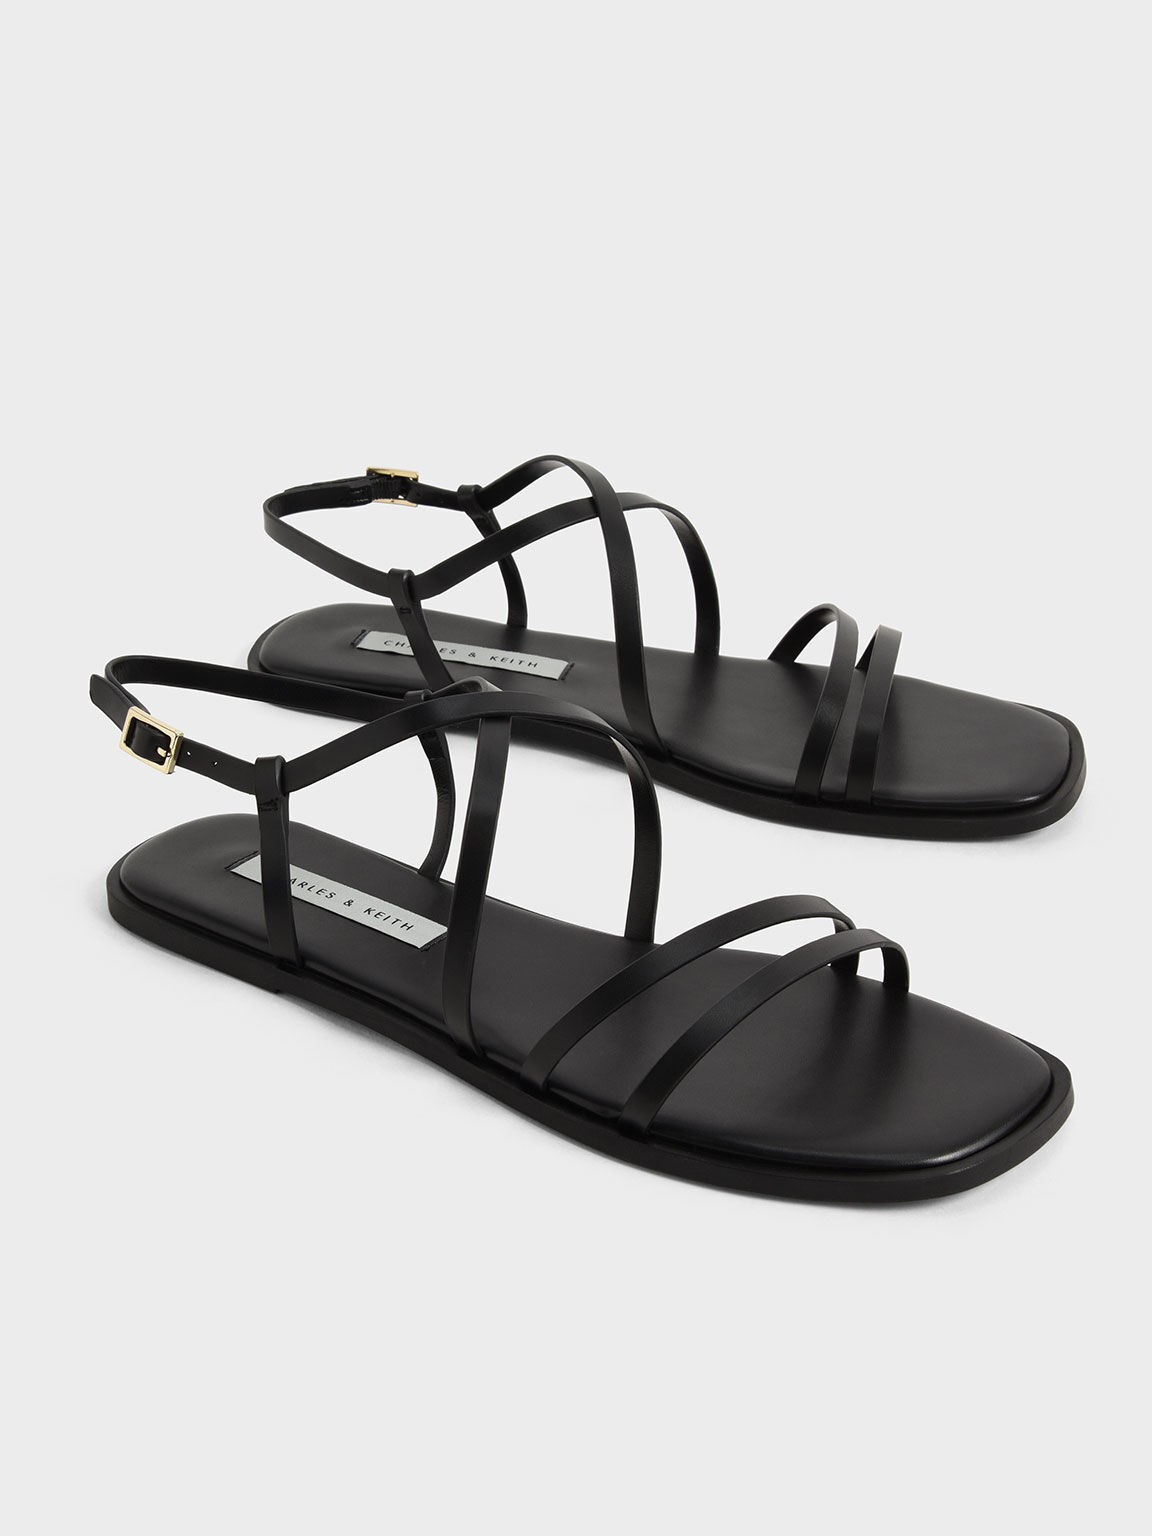 Strappy Flat Sandals, Black, hi-res